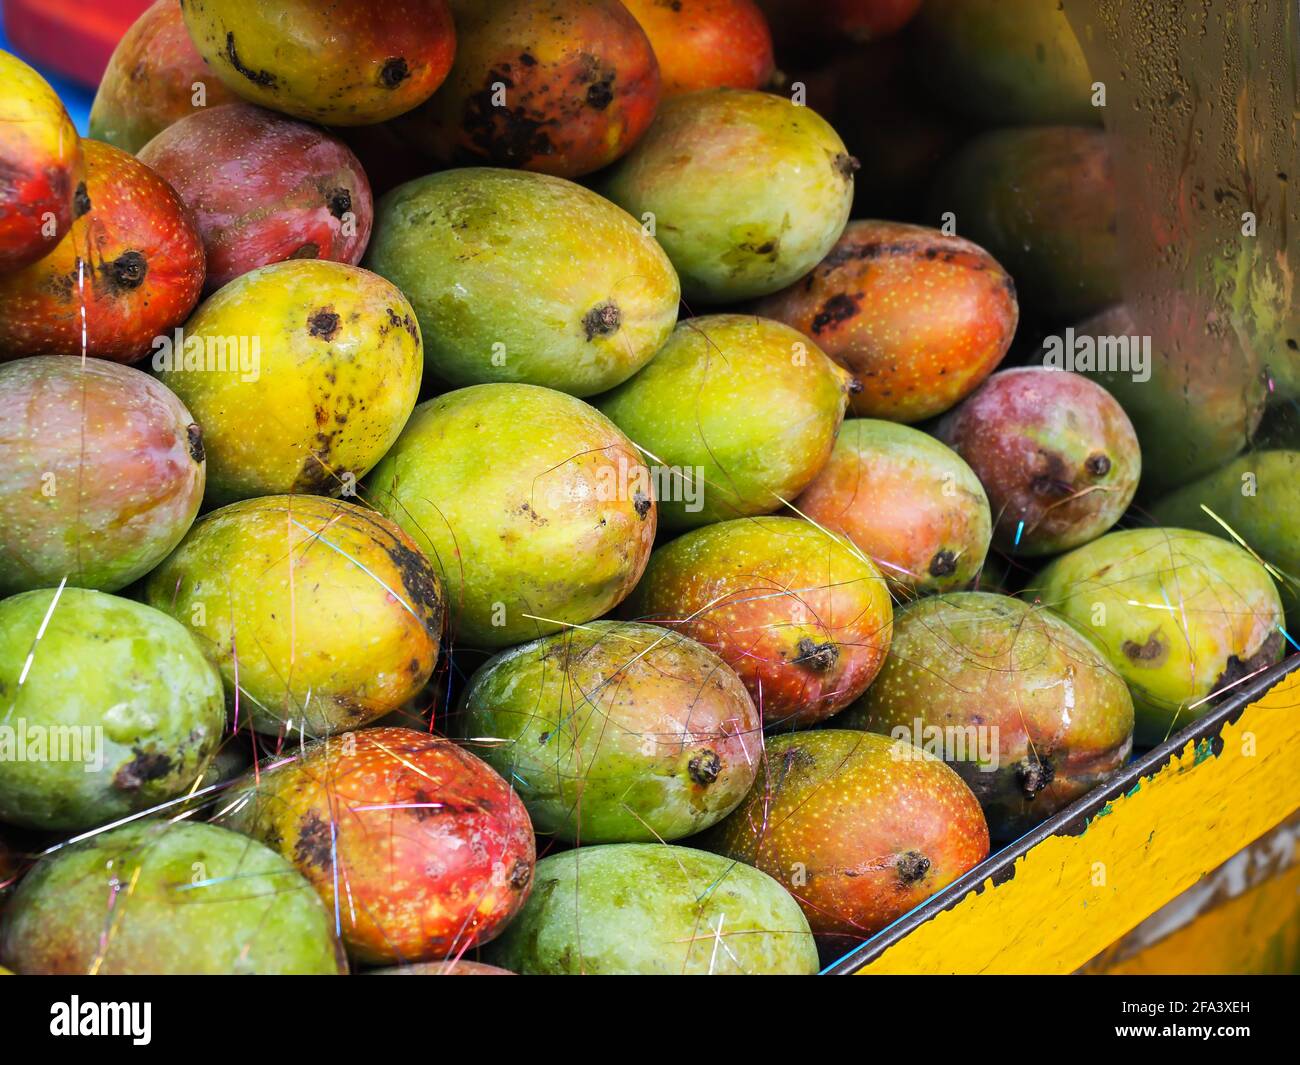 Indian Mango Sales India con le sue ampie zone climatiche produce una grande varietà di manga Foto Stock